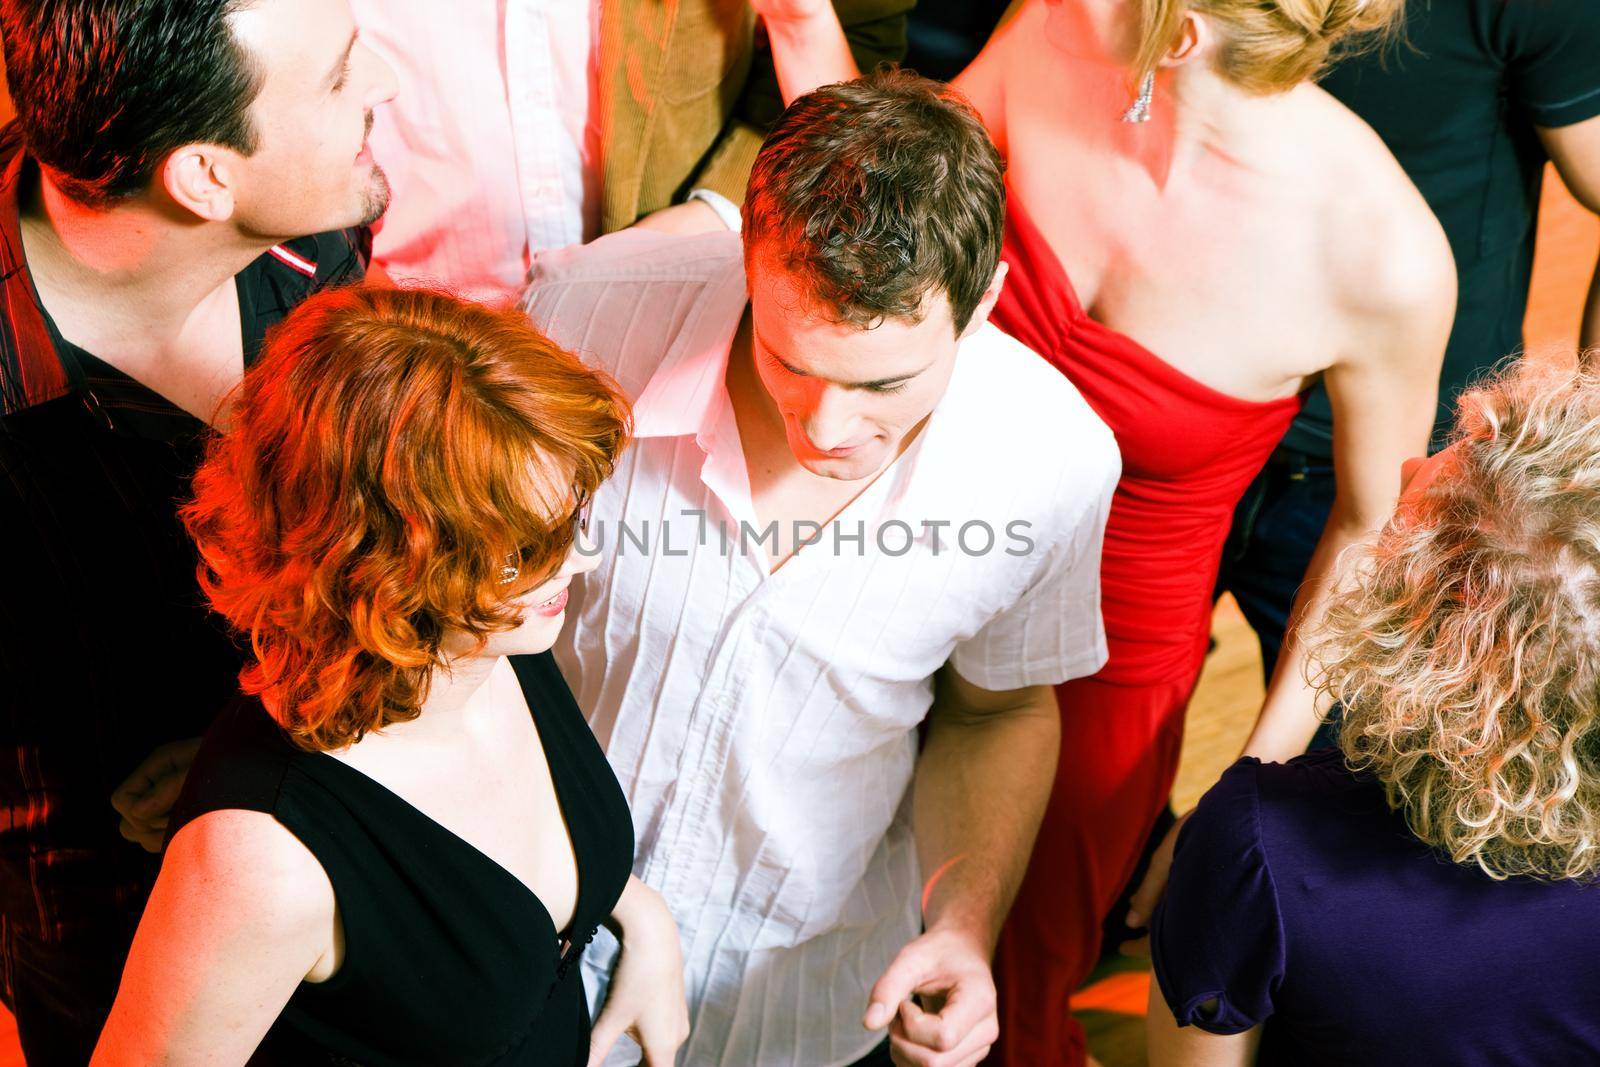 People dancing in a club by Kzenon